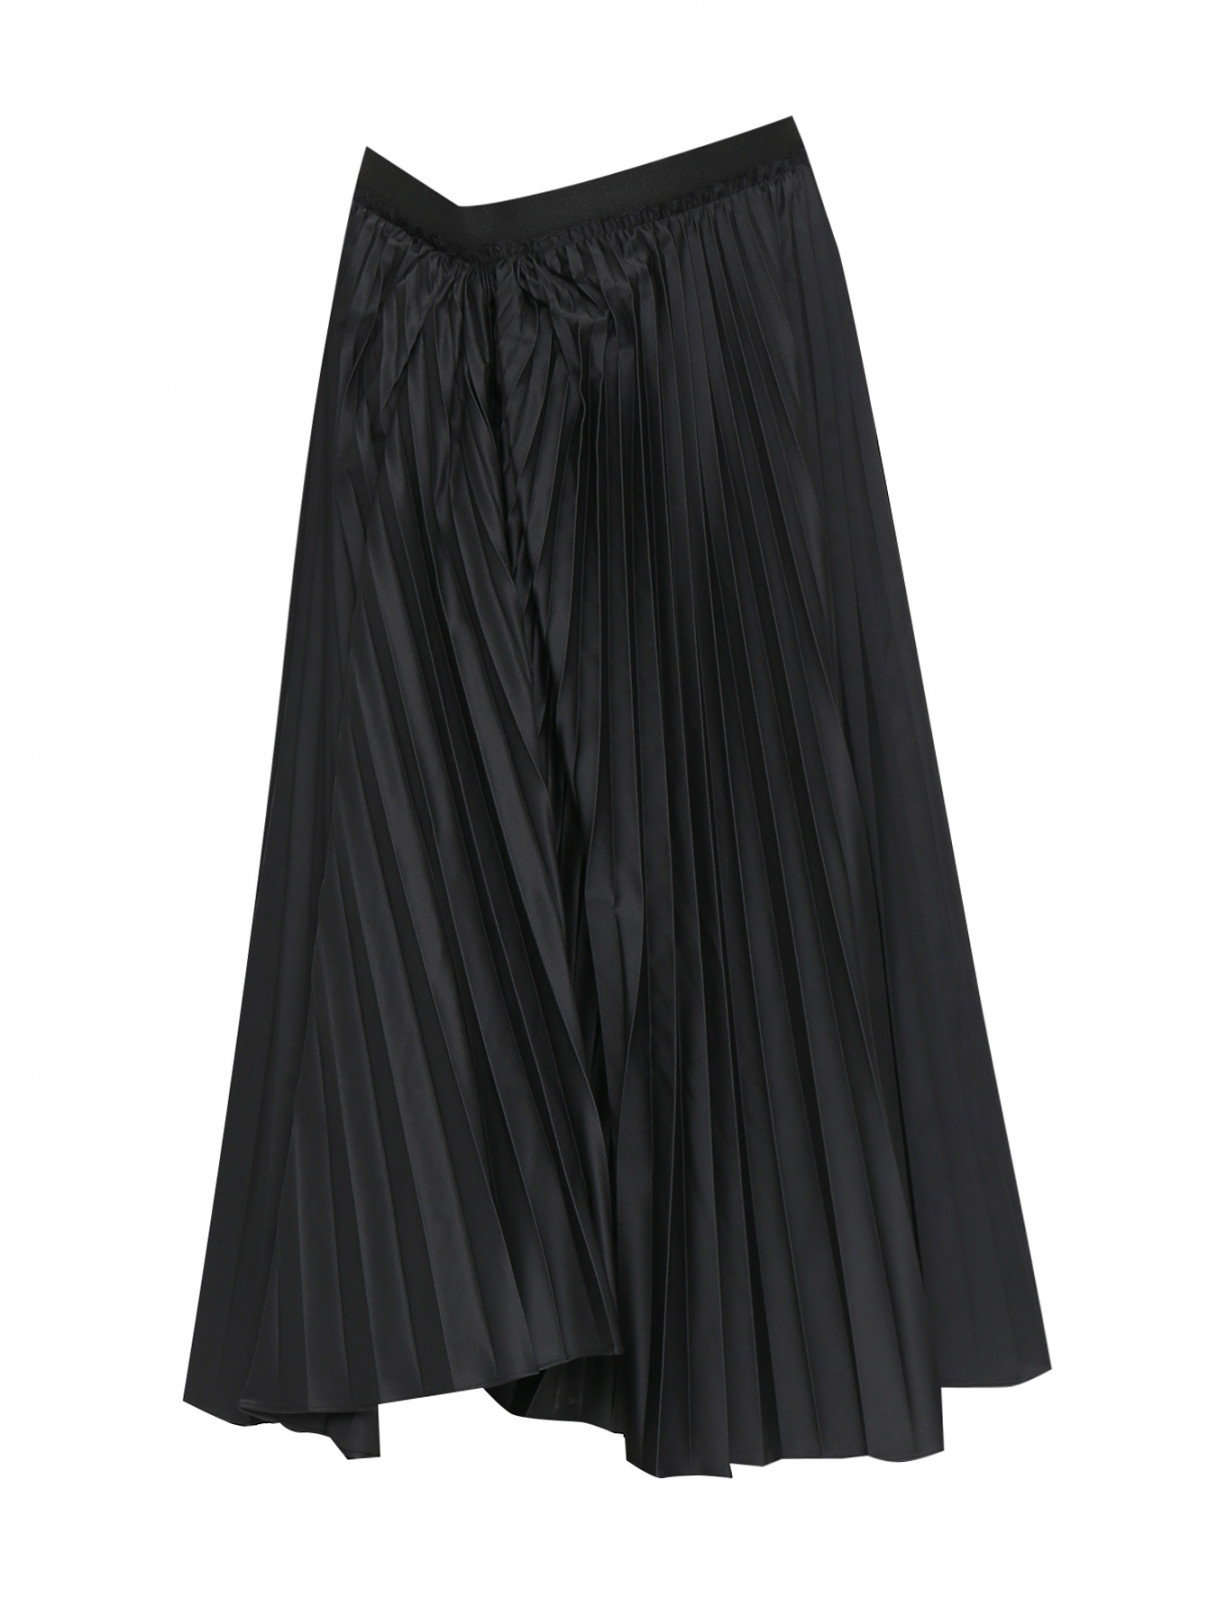 Плиссированная юбка-миди на резинке Marni  –  Общий вид  – Цвет:  Черный